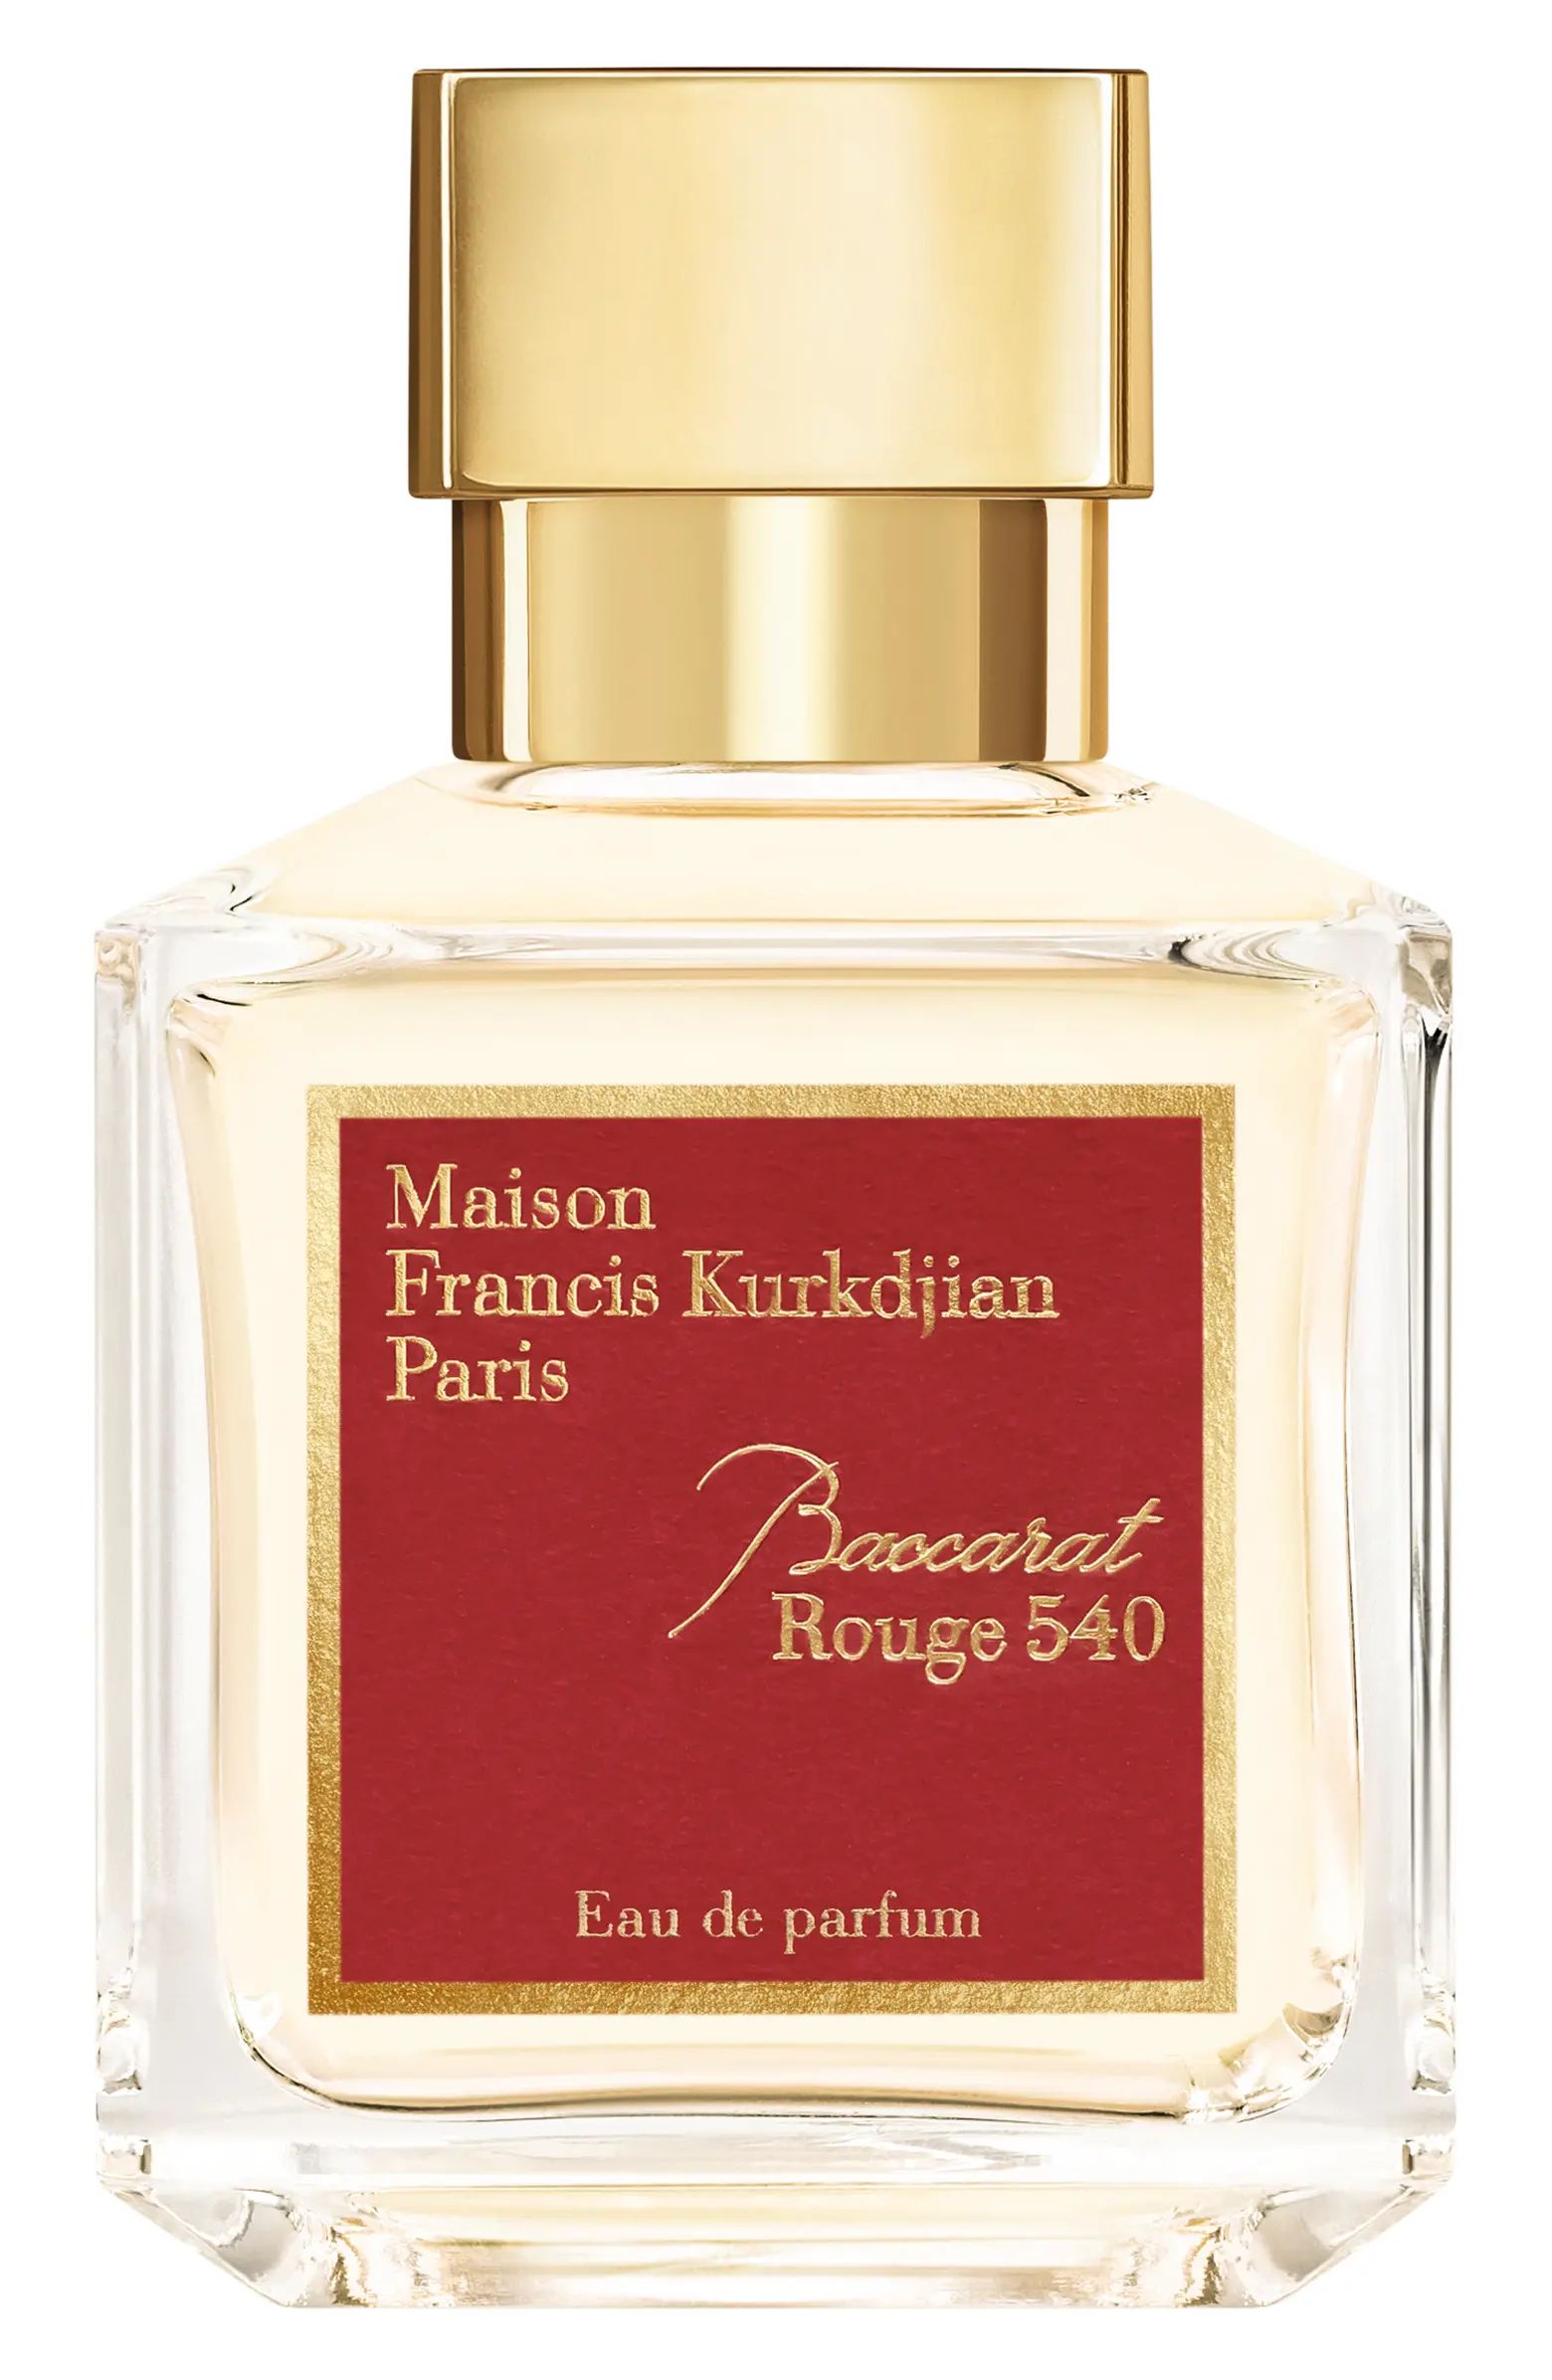 Paris Baccarat Rouge 540 Eau de Parfum | Nordstrom